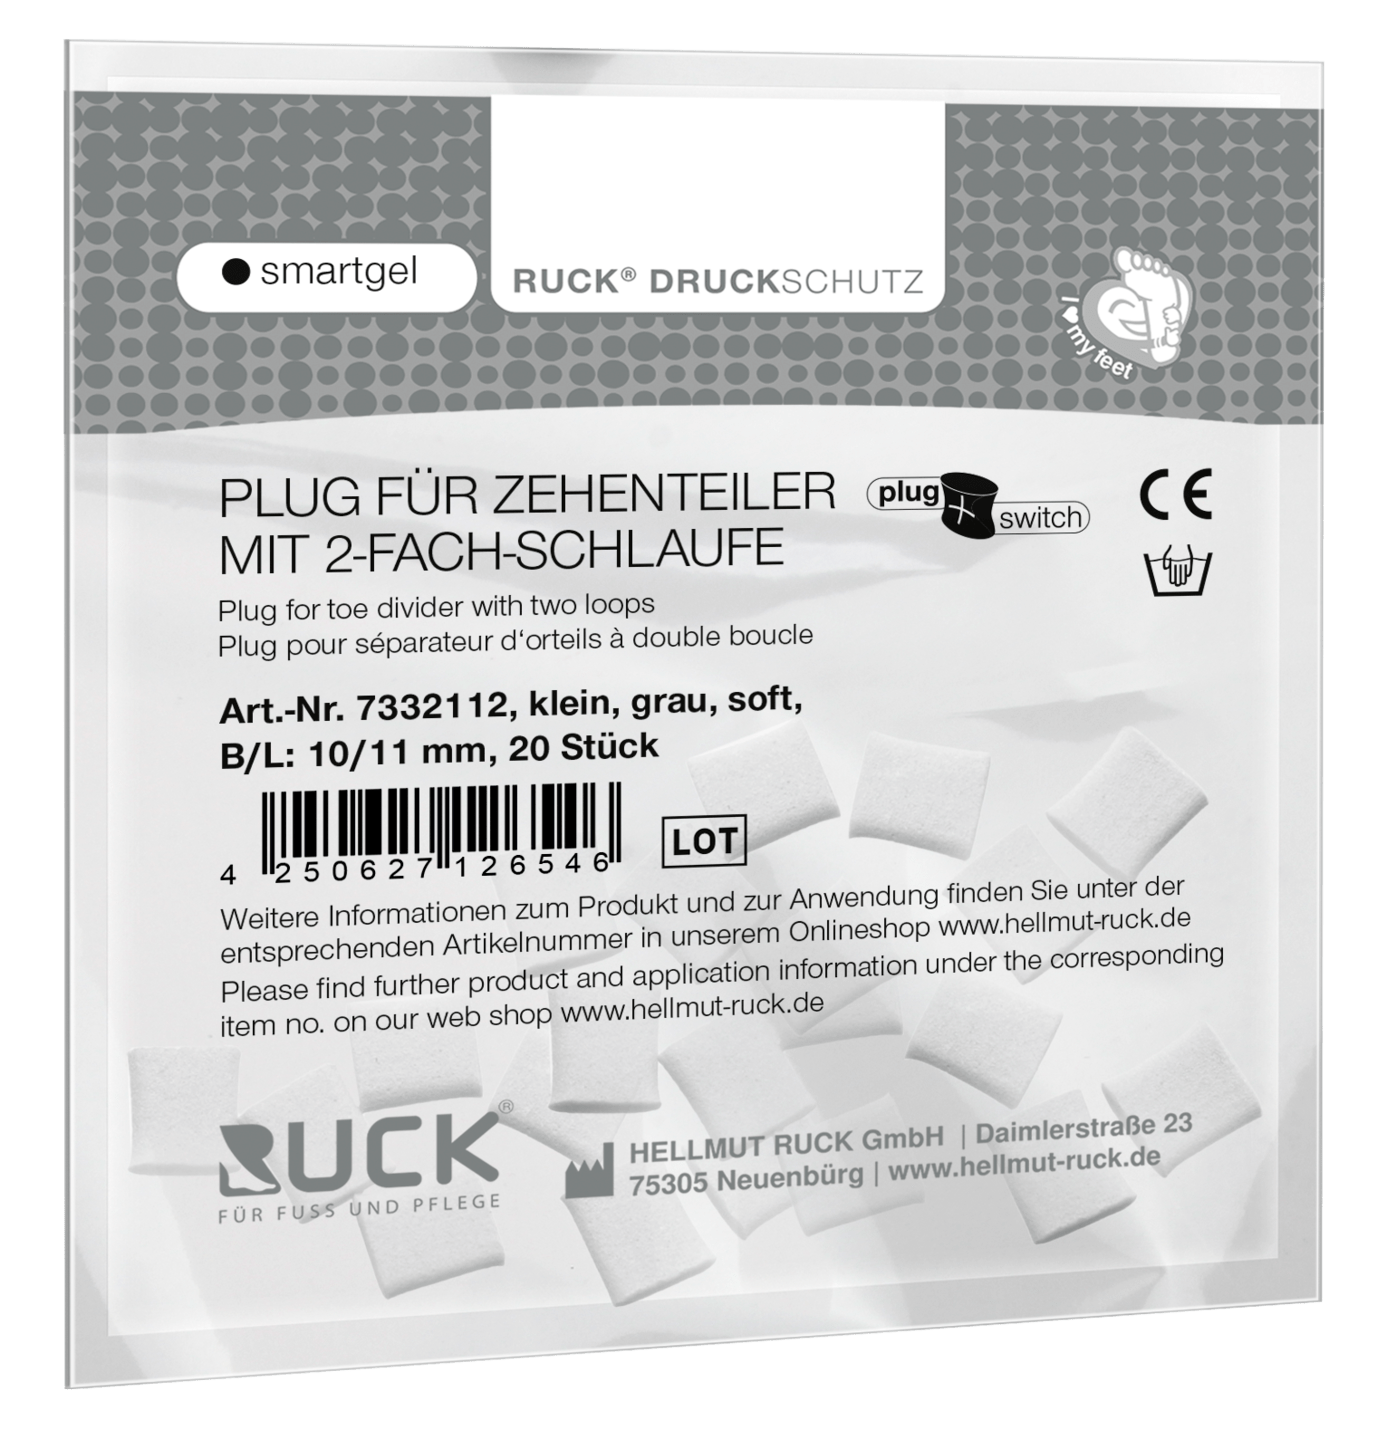 RUCK DRUCKSCHUTZ - Plugs für RUCK® DRUCKSCHUTZ smartgel plug+switch Zehenteiler mit 2-fach Schlaufe in grau